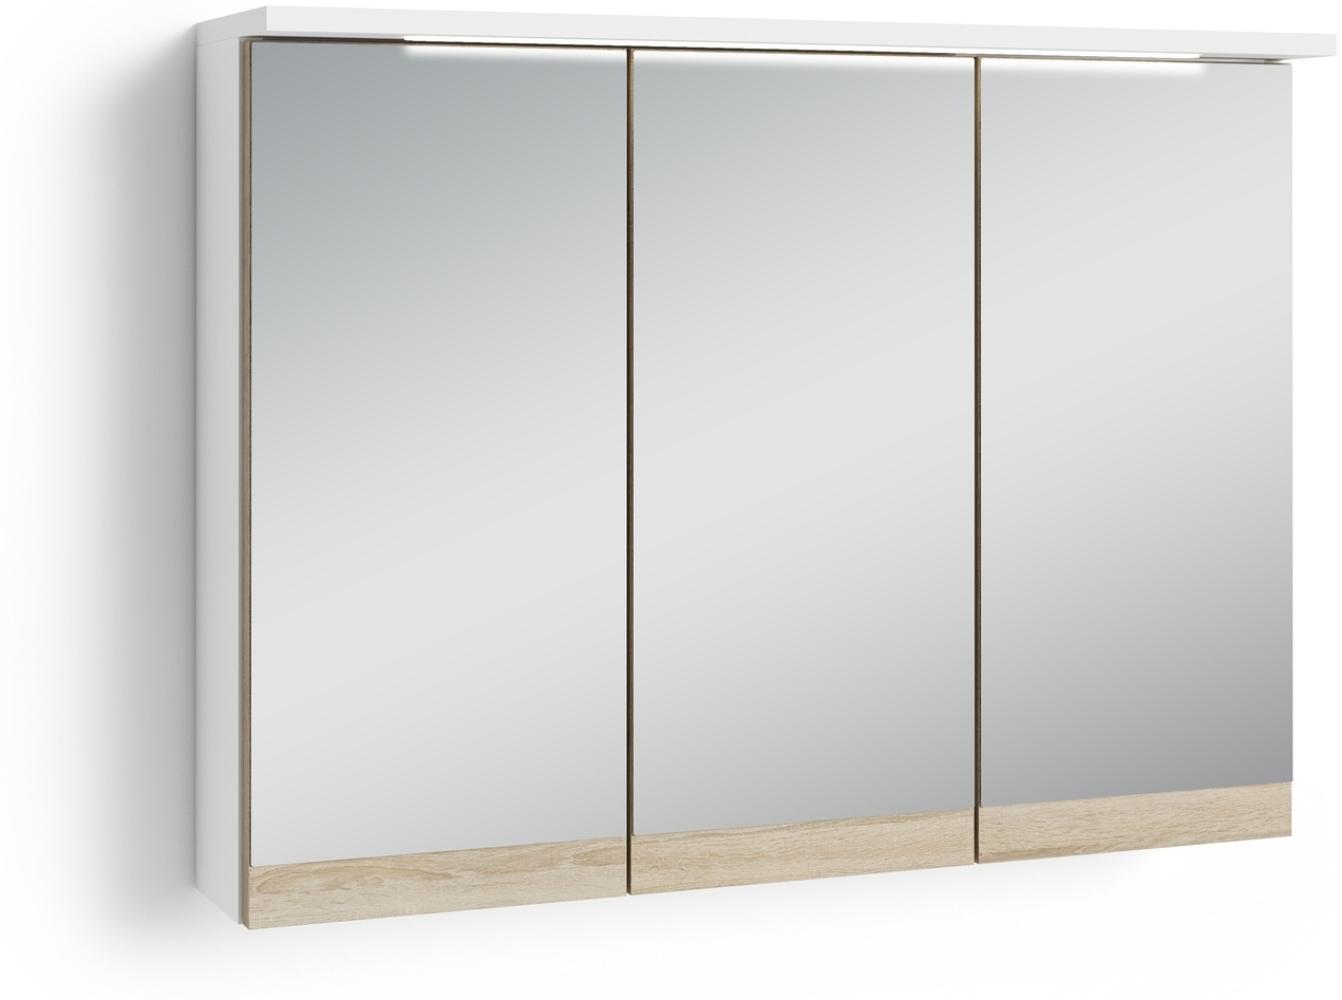 Spiegelschrank >MARINO< (BxHxT: 80x60x20 cm) in weiß - 80x60x20cm (BxHxT) Bild 1